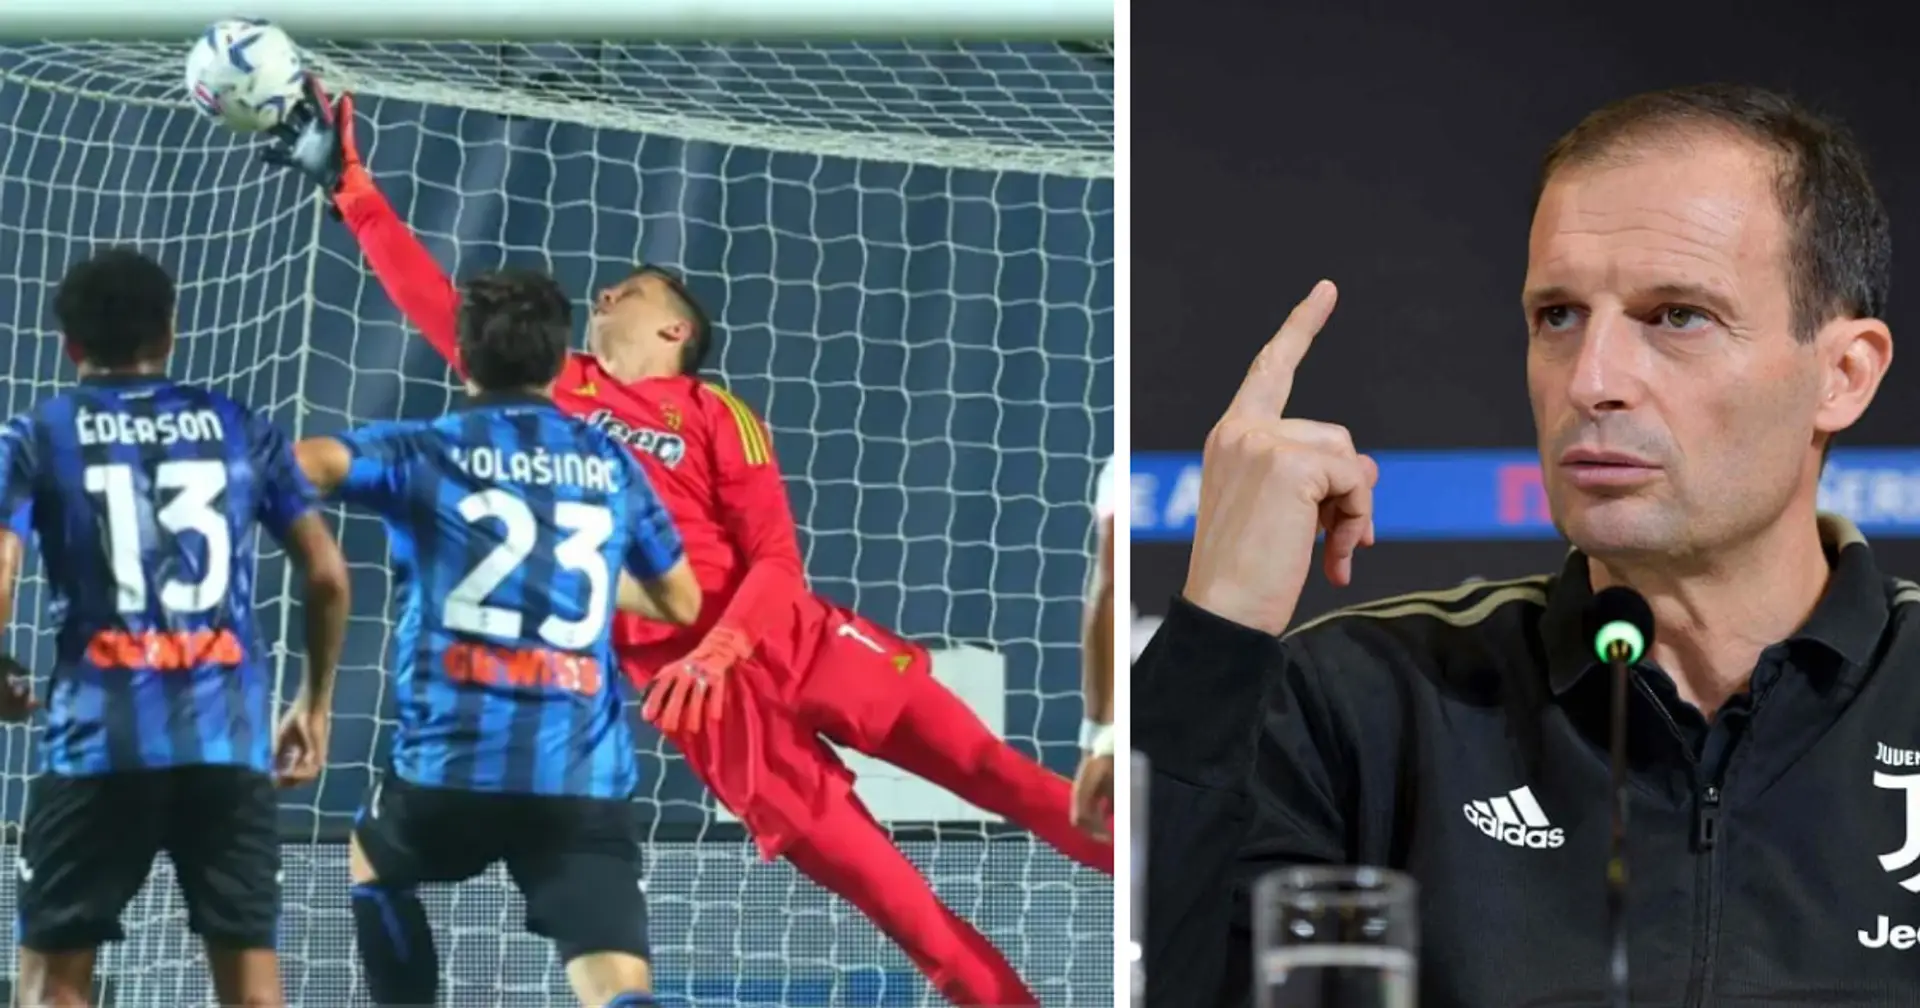 "Szczesny est l'un des meilleurs gardiens d'Europe" : Max Allegri à propos de son gardien après le match contre l'Atalanta